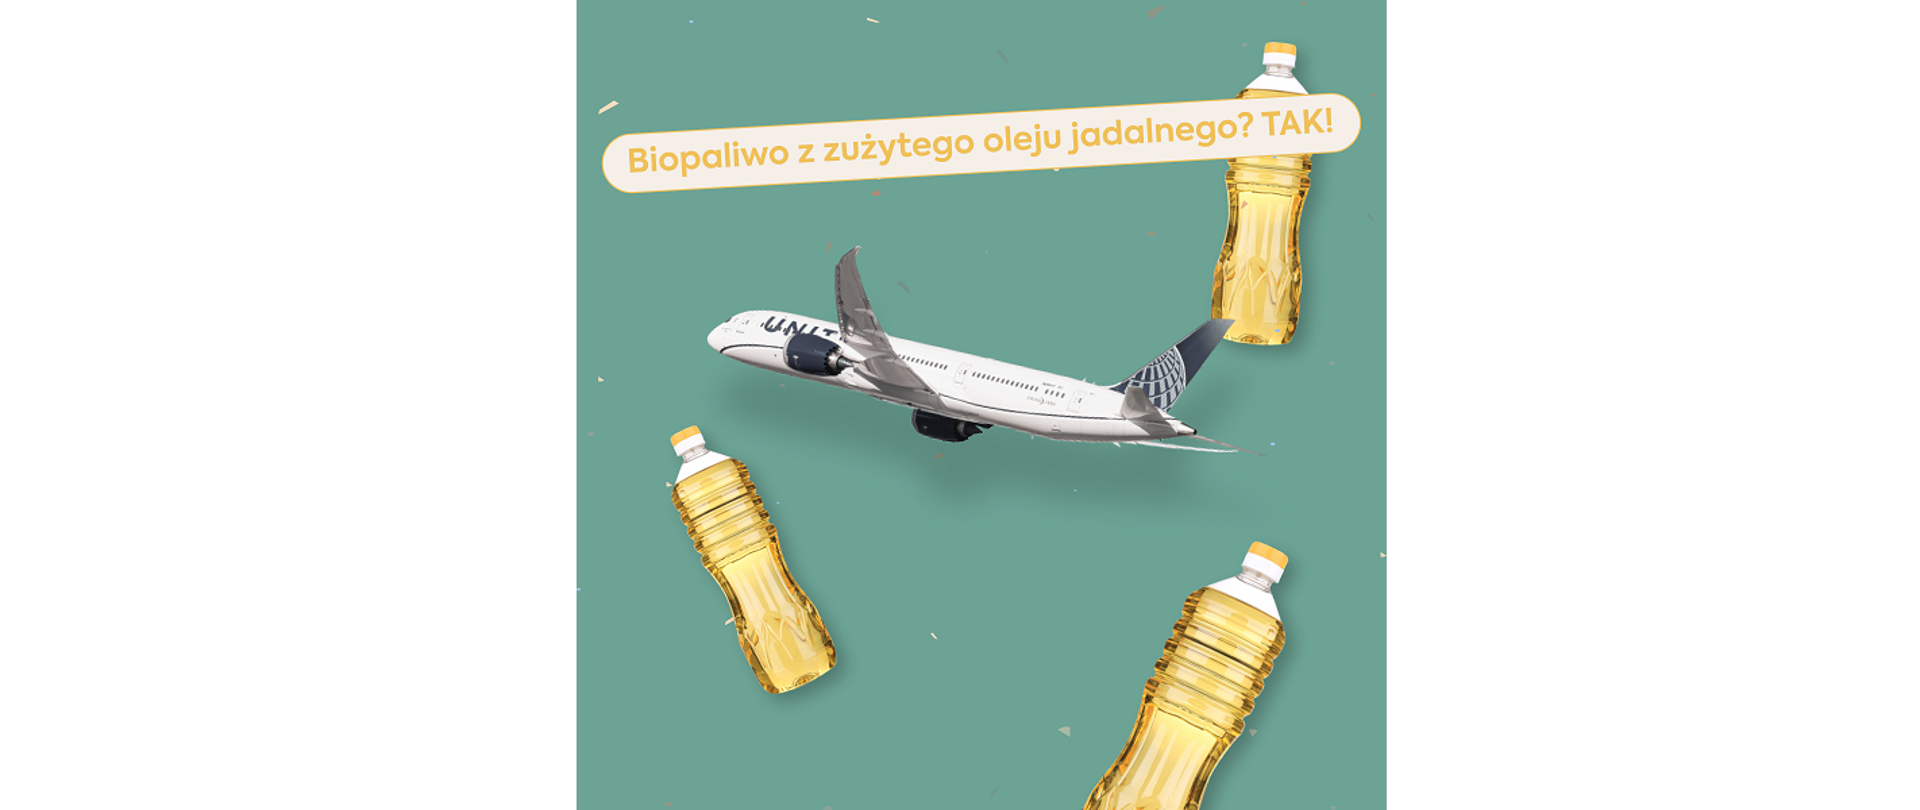 Biopaliwo z zużytego oleju jadalnego. Tak! Na ilustracji samolot pasażerski w locie i butelki z olejem jadalnym